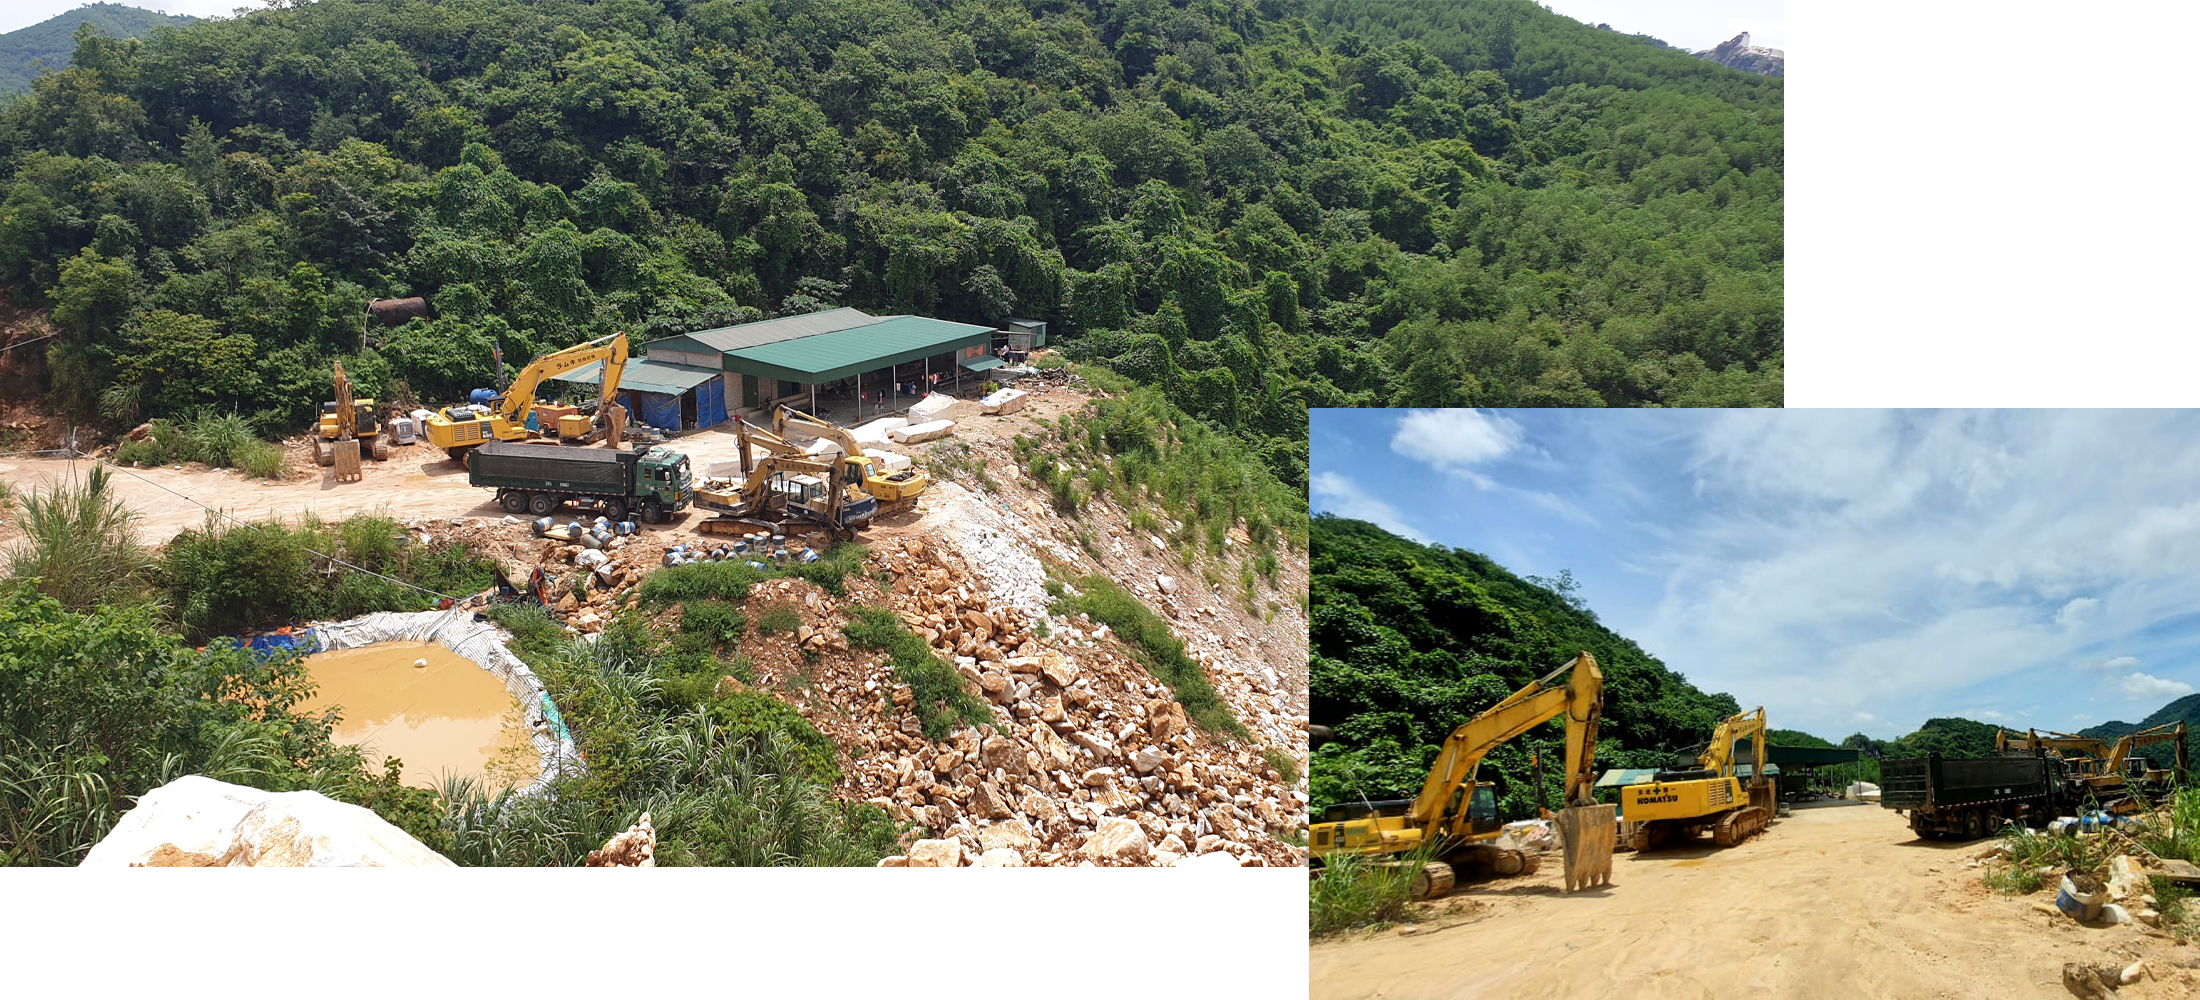 Các phương tiện khai thác khoáng sản bị Công an tỉnh thu giữ trong vụ bắt quả tang khai thác khoáng sản trái phép tại vùng núi thuộc xóm Kèn, xã Châu Lộc, huyện Quỳ Hợp.